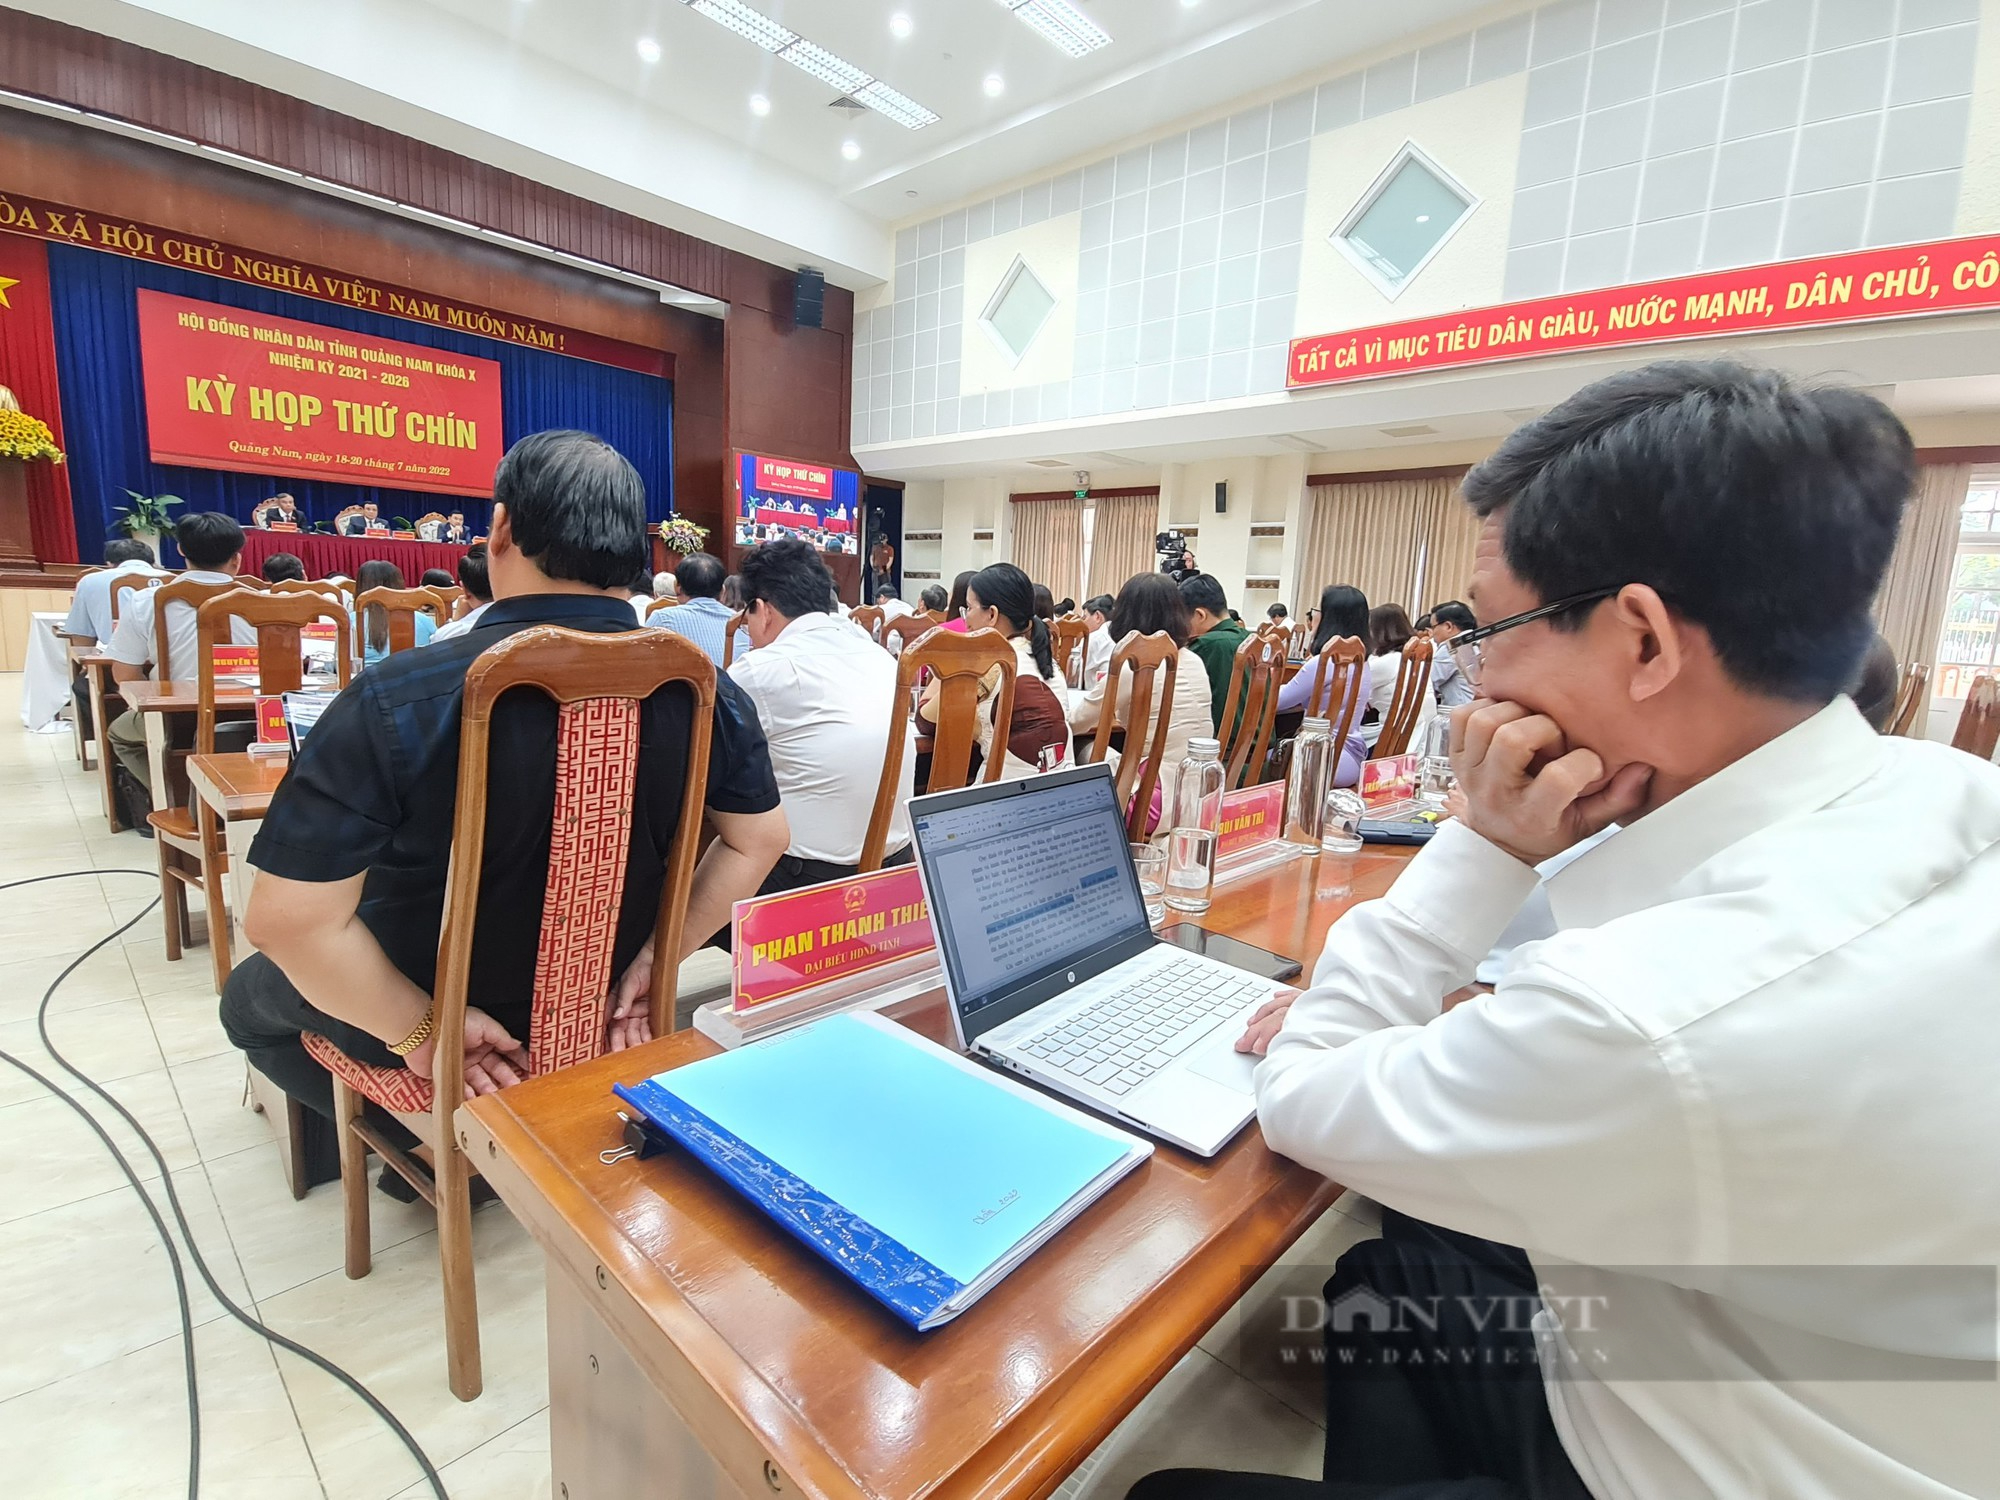 Đại biểu được hỗ trợ mua Ipad: Bí thư Quảng Nam nói rằng, coi như món quà cho đại biểu - Ảnh 2.